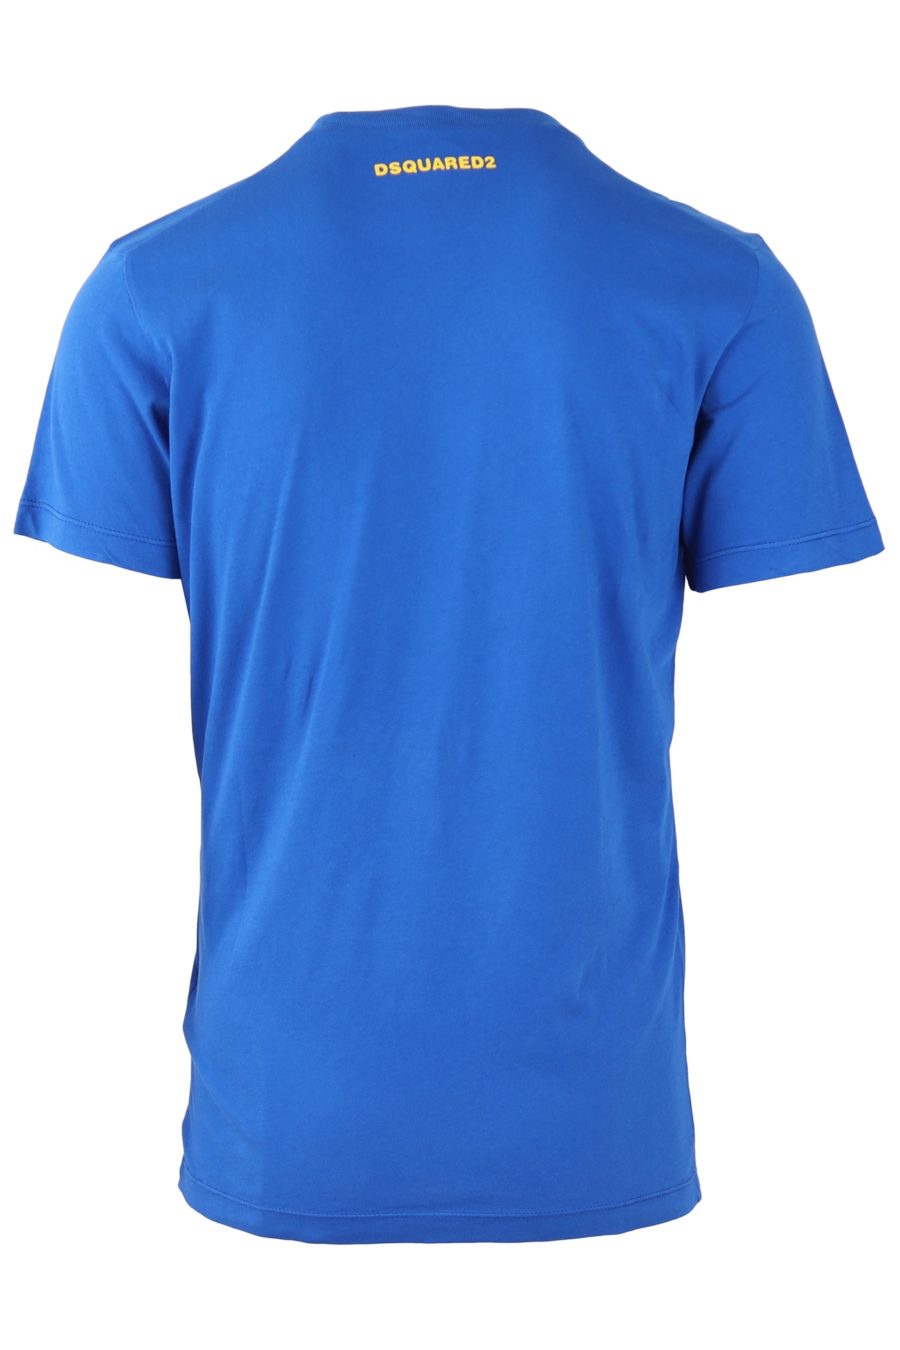 Dsquared2 T-shirt azul com logótipo grande DSQ2 - c46590cc688972265fa3ad8a97ce7159698c8de6